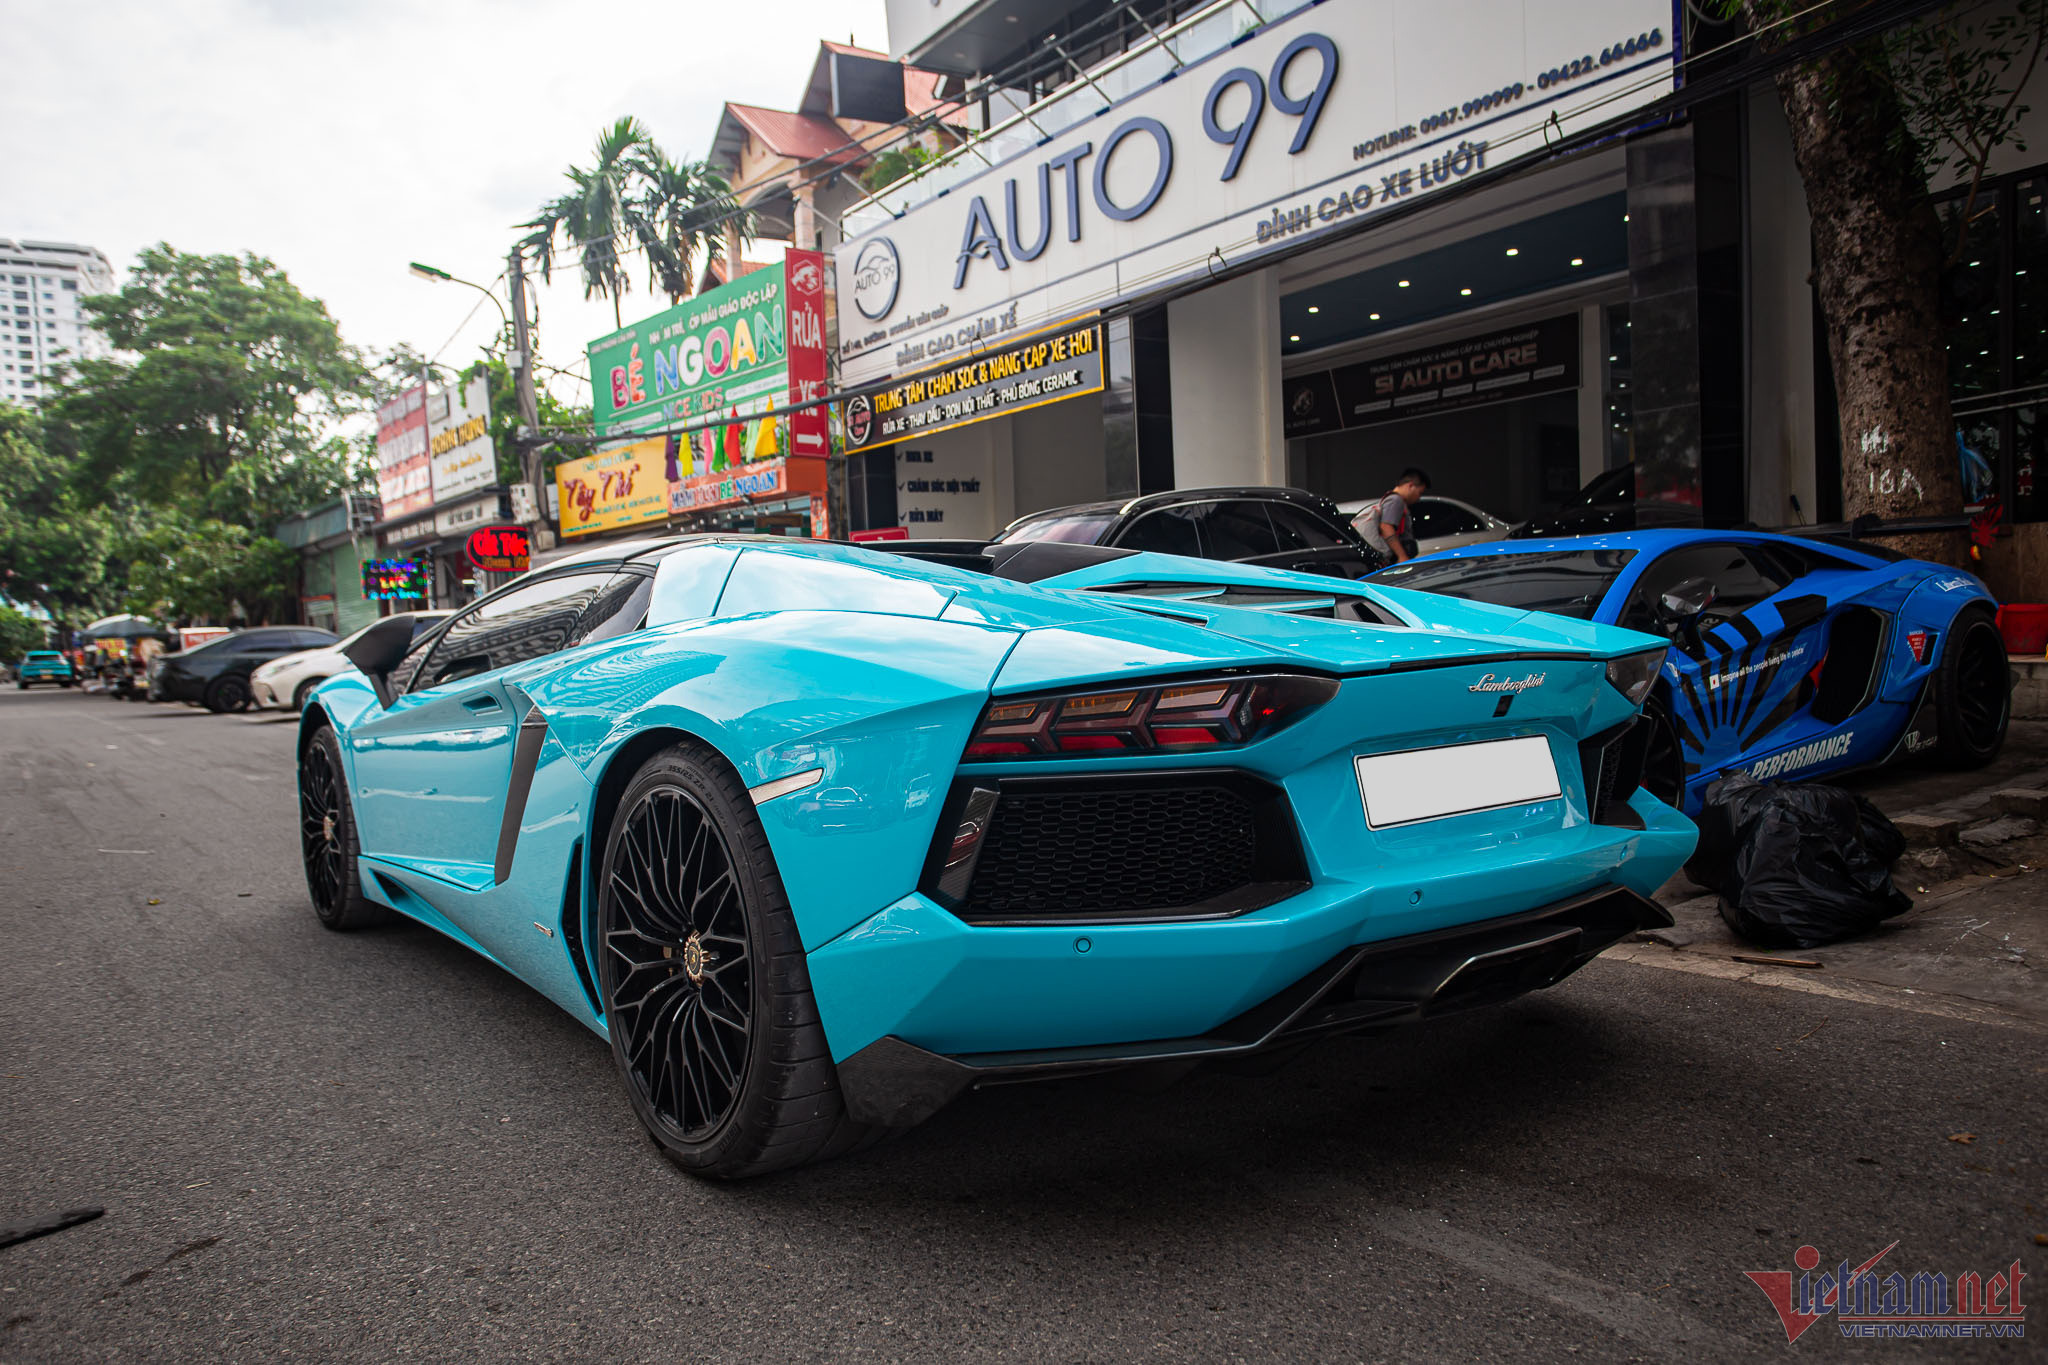 Siêu xe Lamborghini Aventador một thời của dân chơi Đắk Lắk bán giá gần 20 tỷ